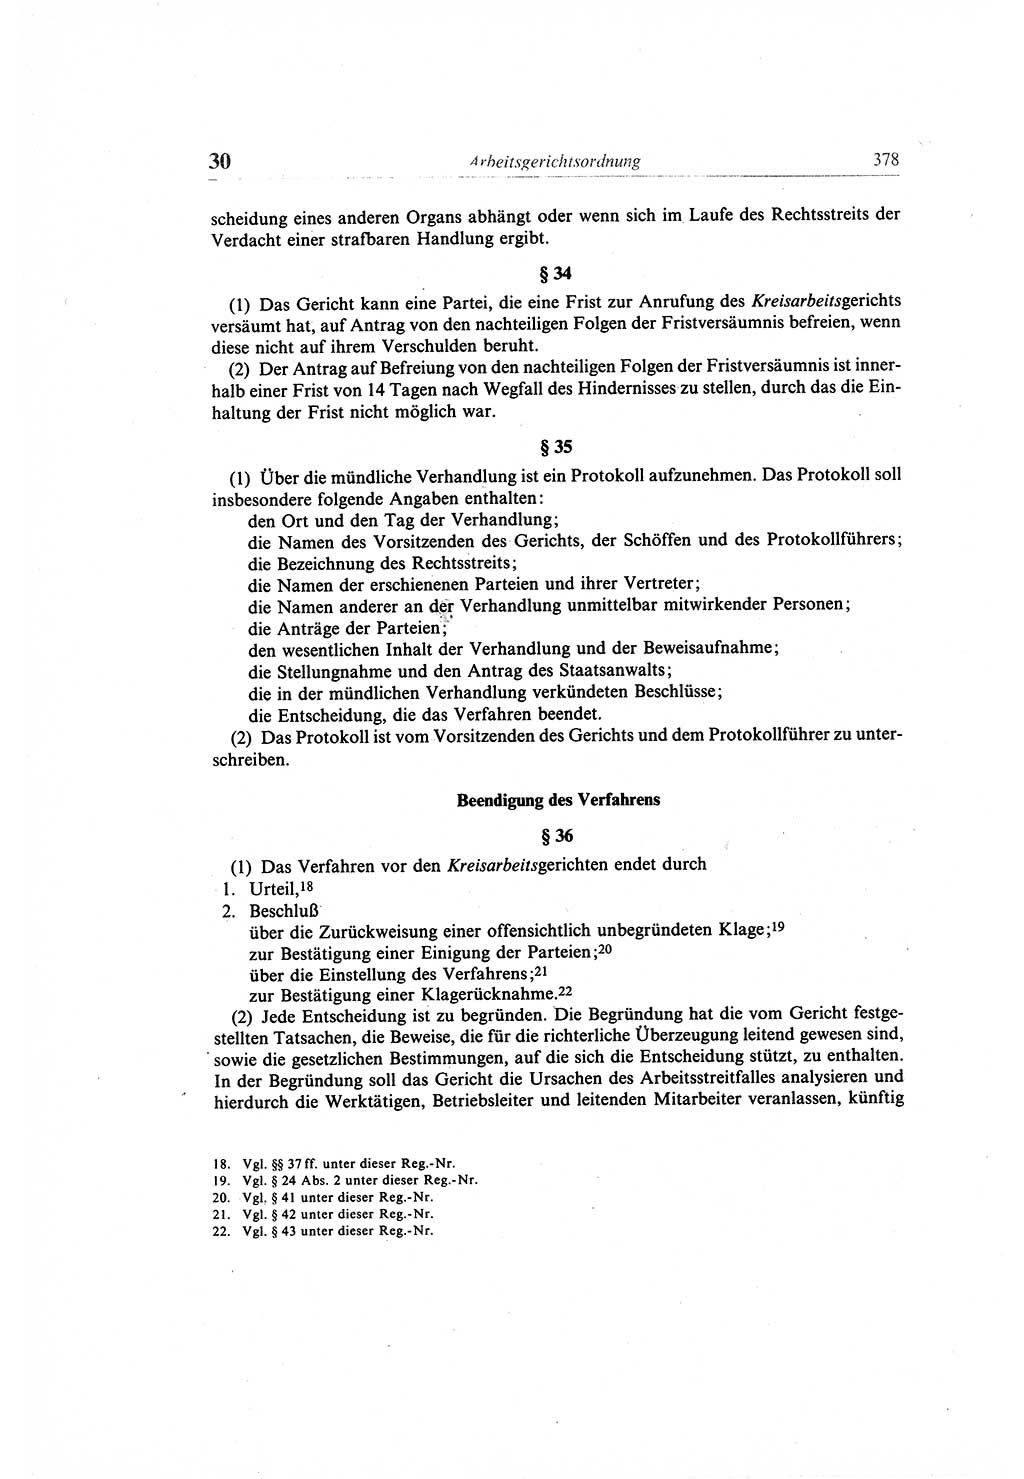 Gesetzbuch der Arbeit (GBA) und andere ausgewählte rechtliche Bestimmungen [Deutsche Demokratische Republik (DDR)] 1968, Seite 378 (GBA DDR 1968, S. 378)